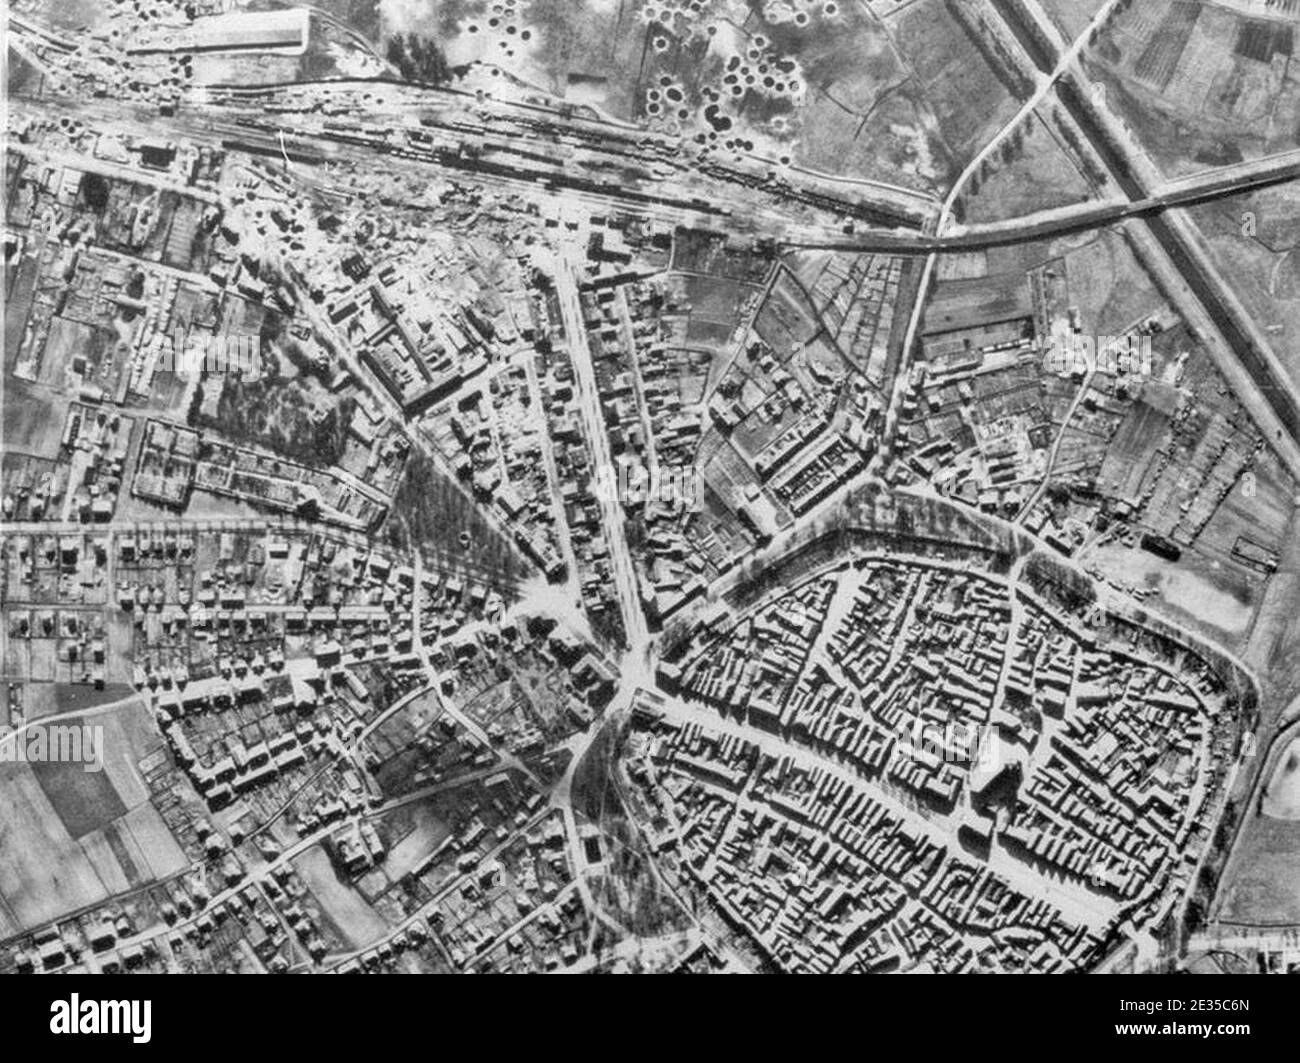 Luftbild - Neumarkt nach Bombenangriff 1945-02-23. Stock Photo